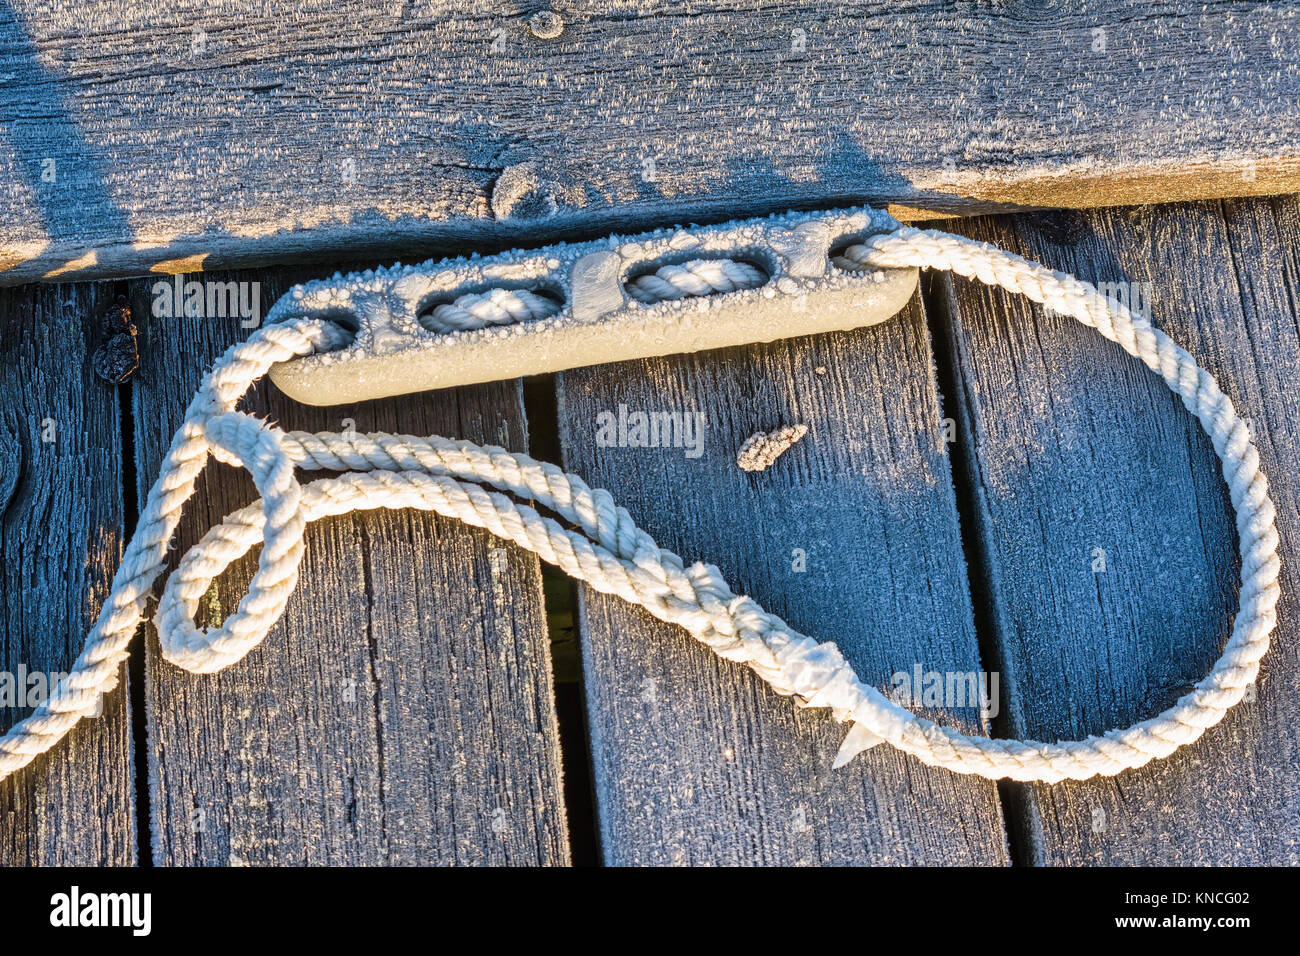 Cima nautica con anello in corrispondenza di una estremità ed un espansore o tampone ad esso collegato, giacente su di un gelido molo in legno. Foto Stock